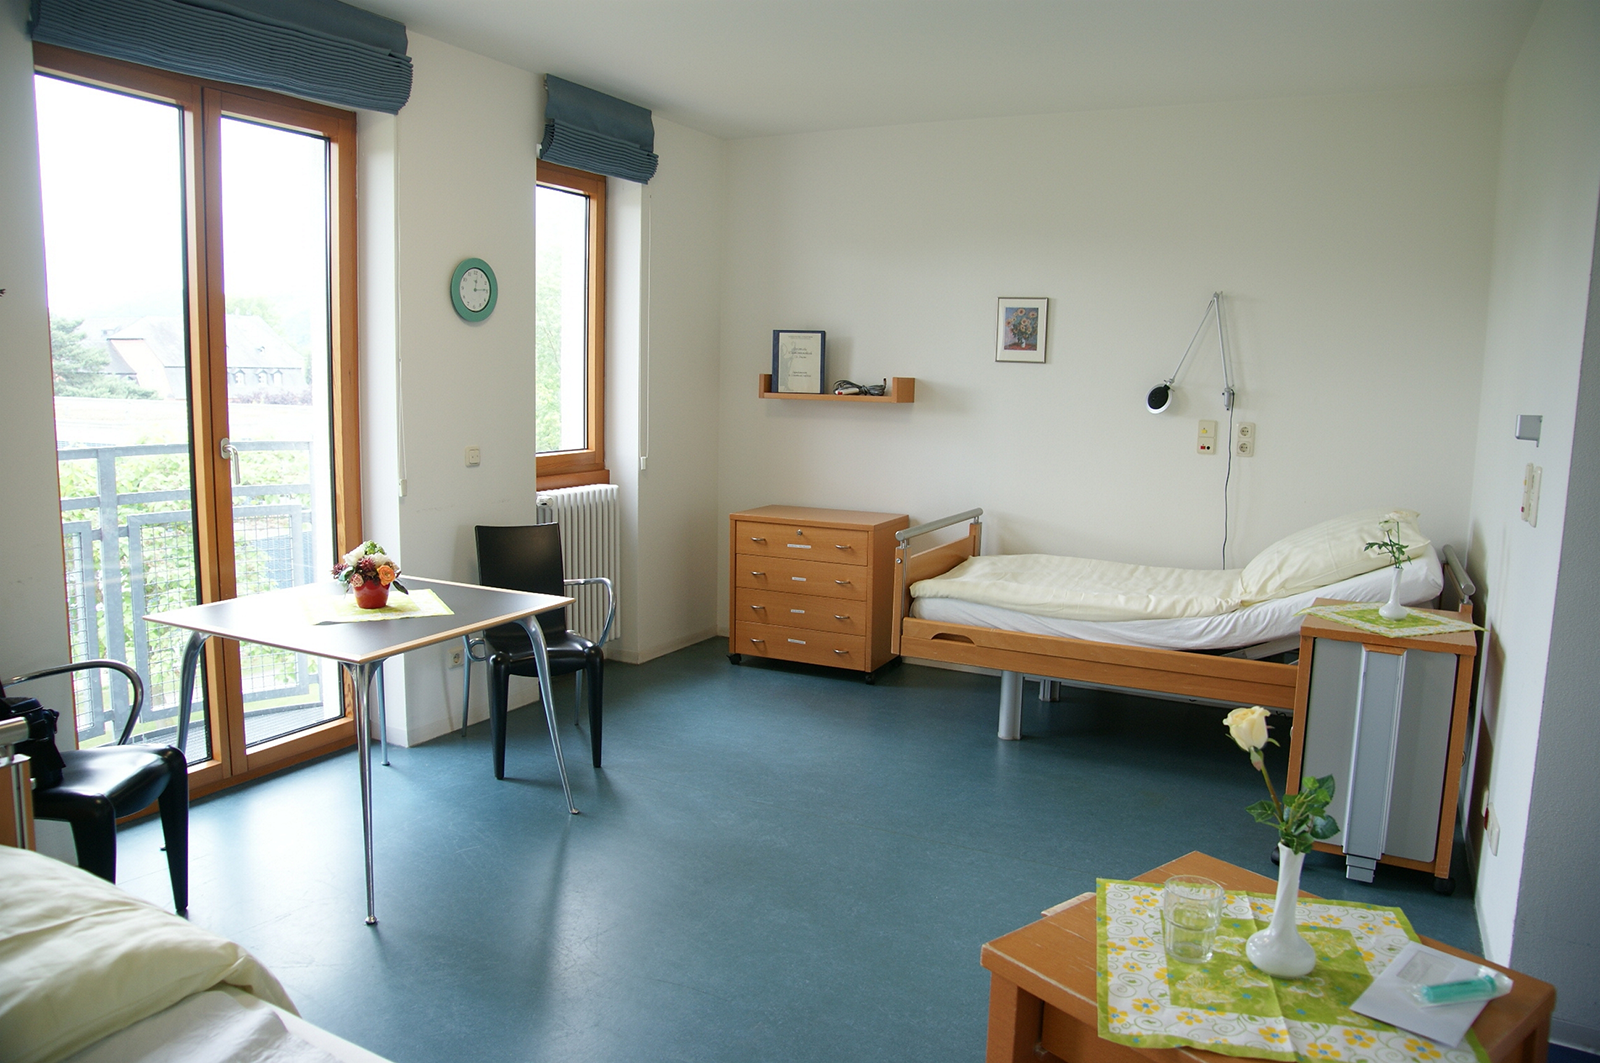 Ein Zimmer in der Geriatrischen Rehabilitationsklinik St. Irminen.